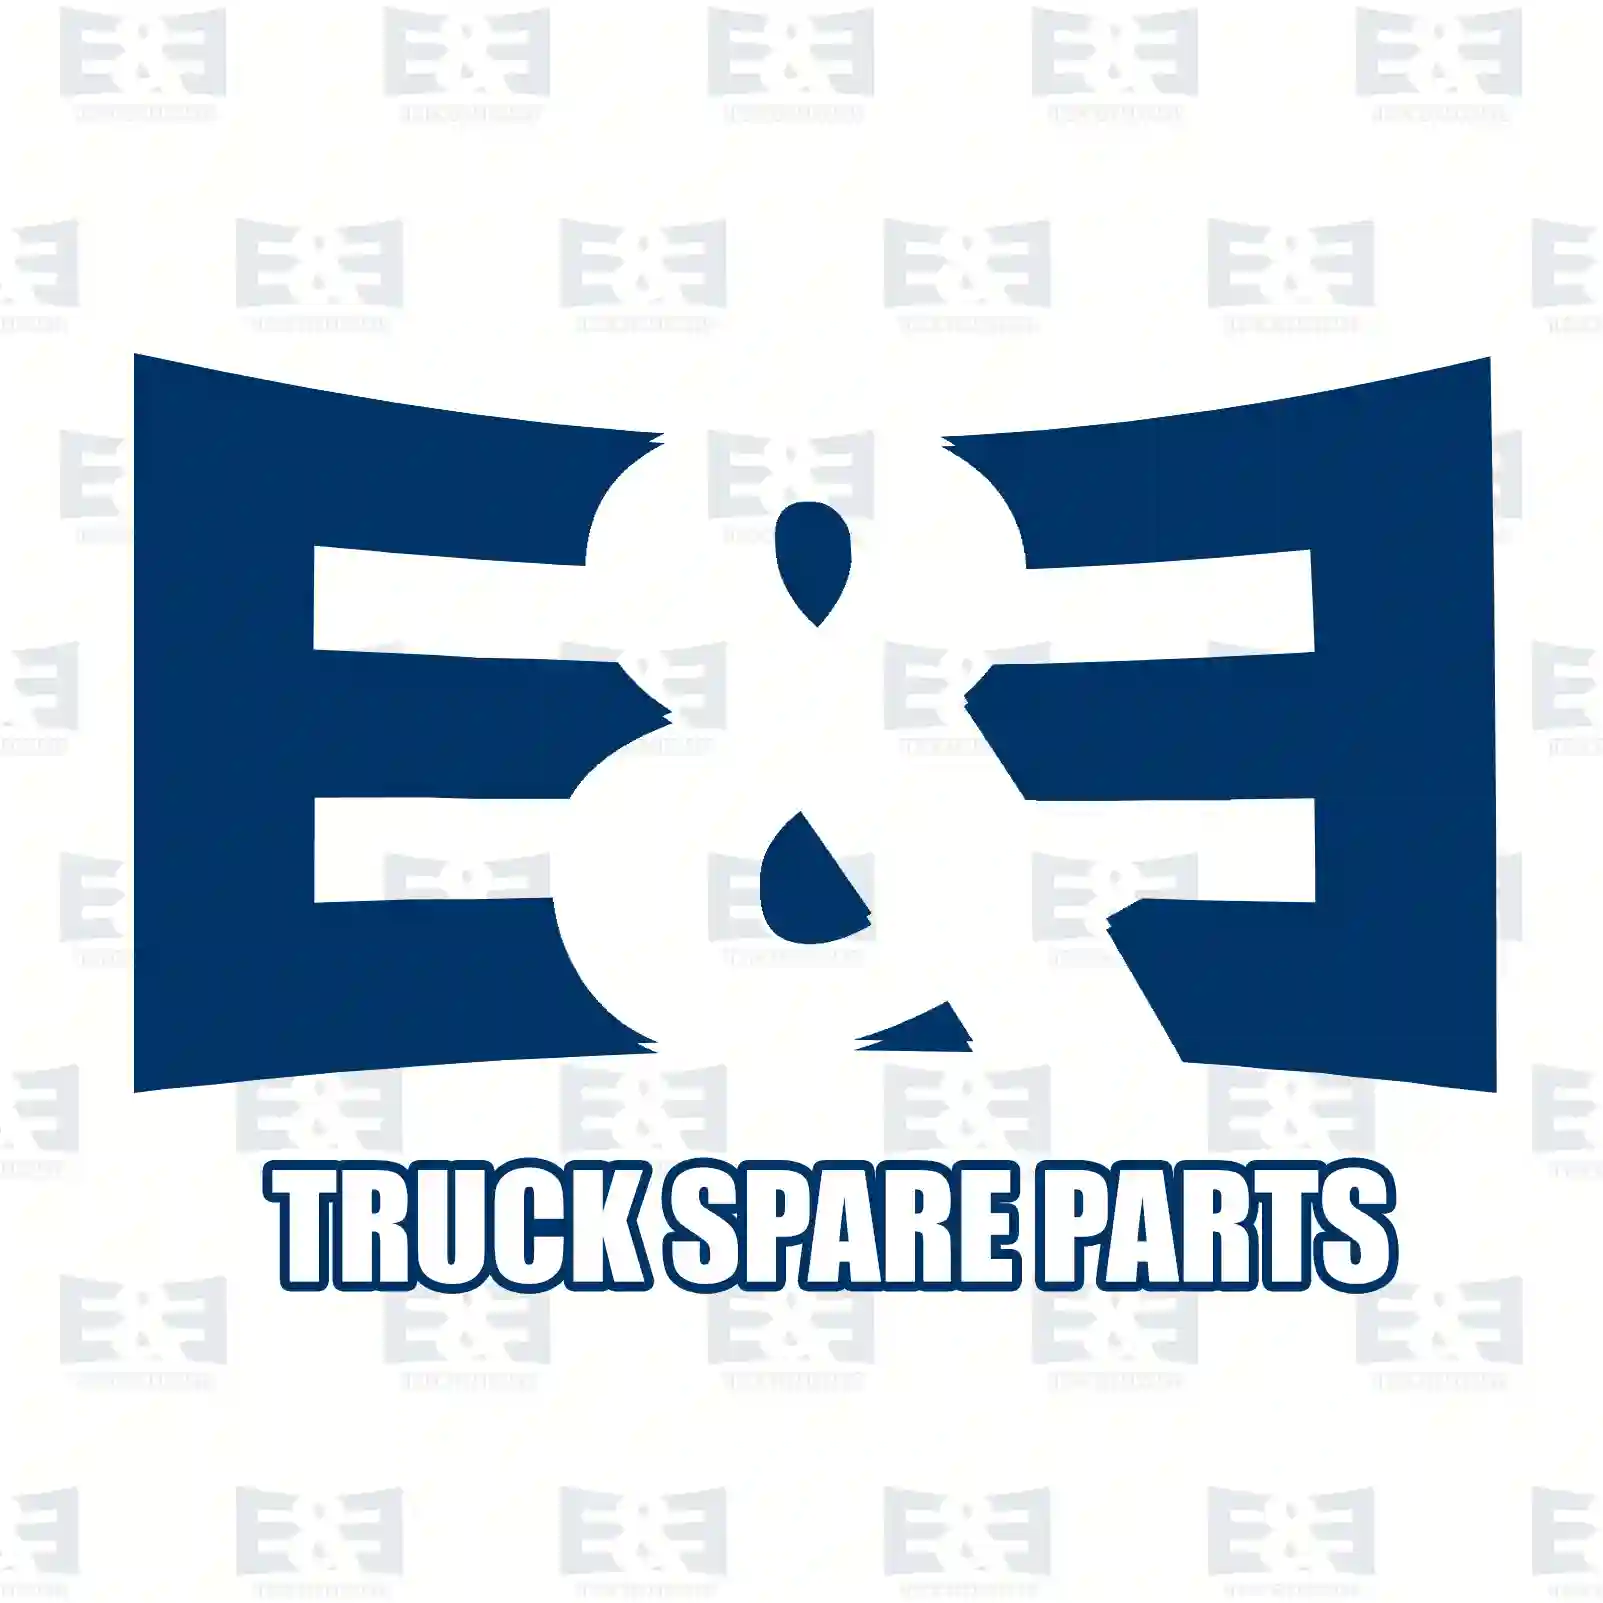 Guide sleeve, 2E2278785, 1668214 ||  2E2278785 E&E Truck Spare Parts | Truck Spare Parts, Auotomotive Spare Parts Guide sleeve, 2E2278785, 1668214 ||  2E2278785 E&E Truck Spare Parts | Truck Spare Parts, Auotomotive Spare Parts